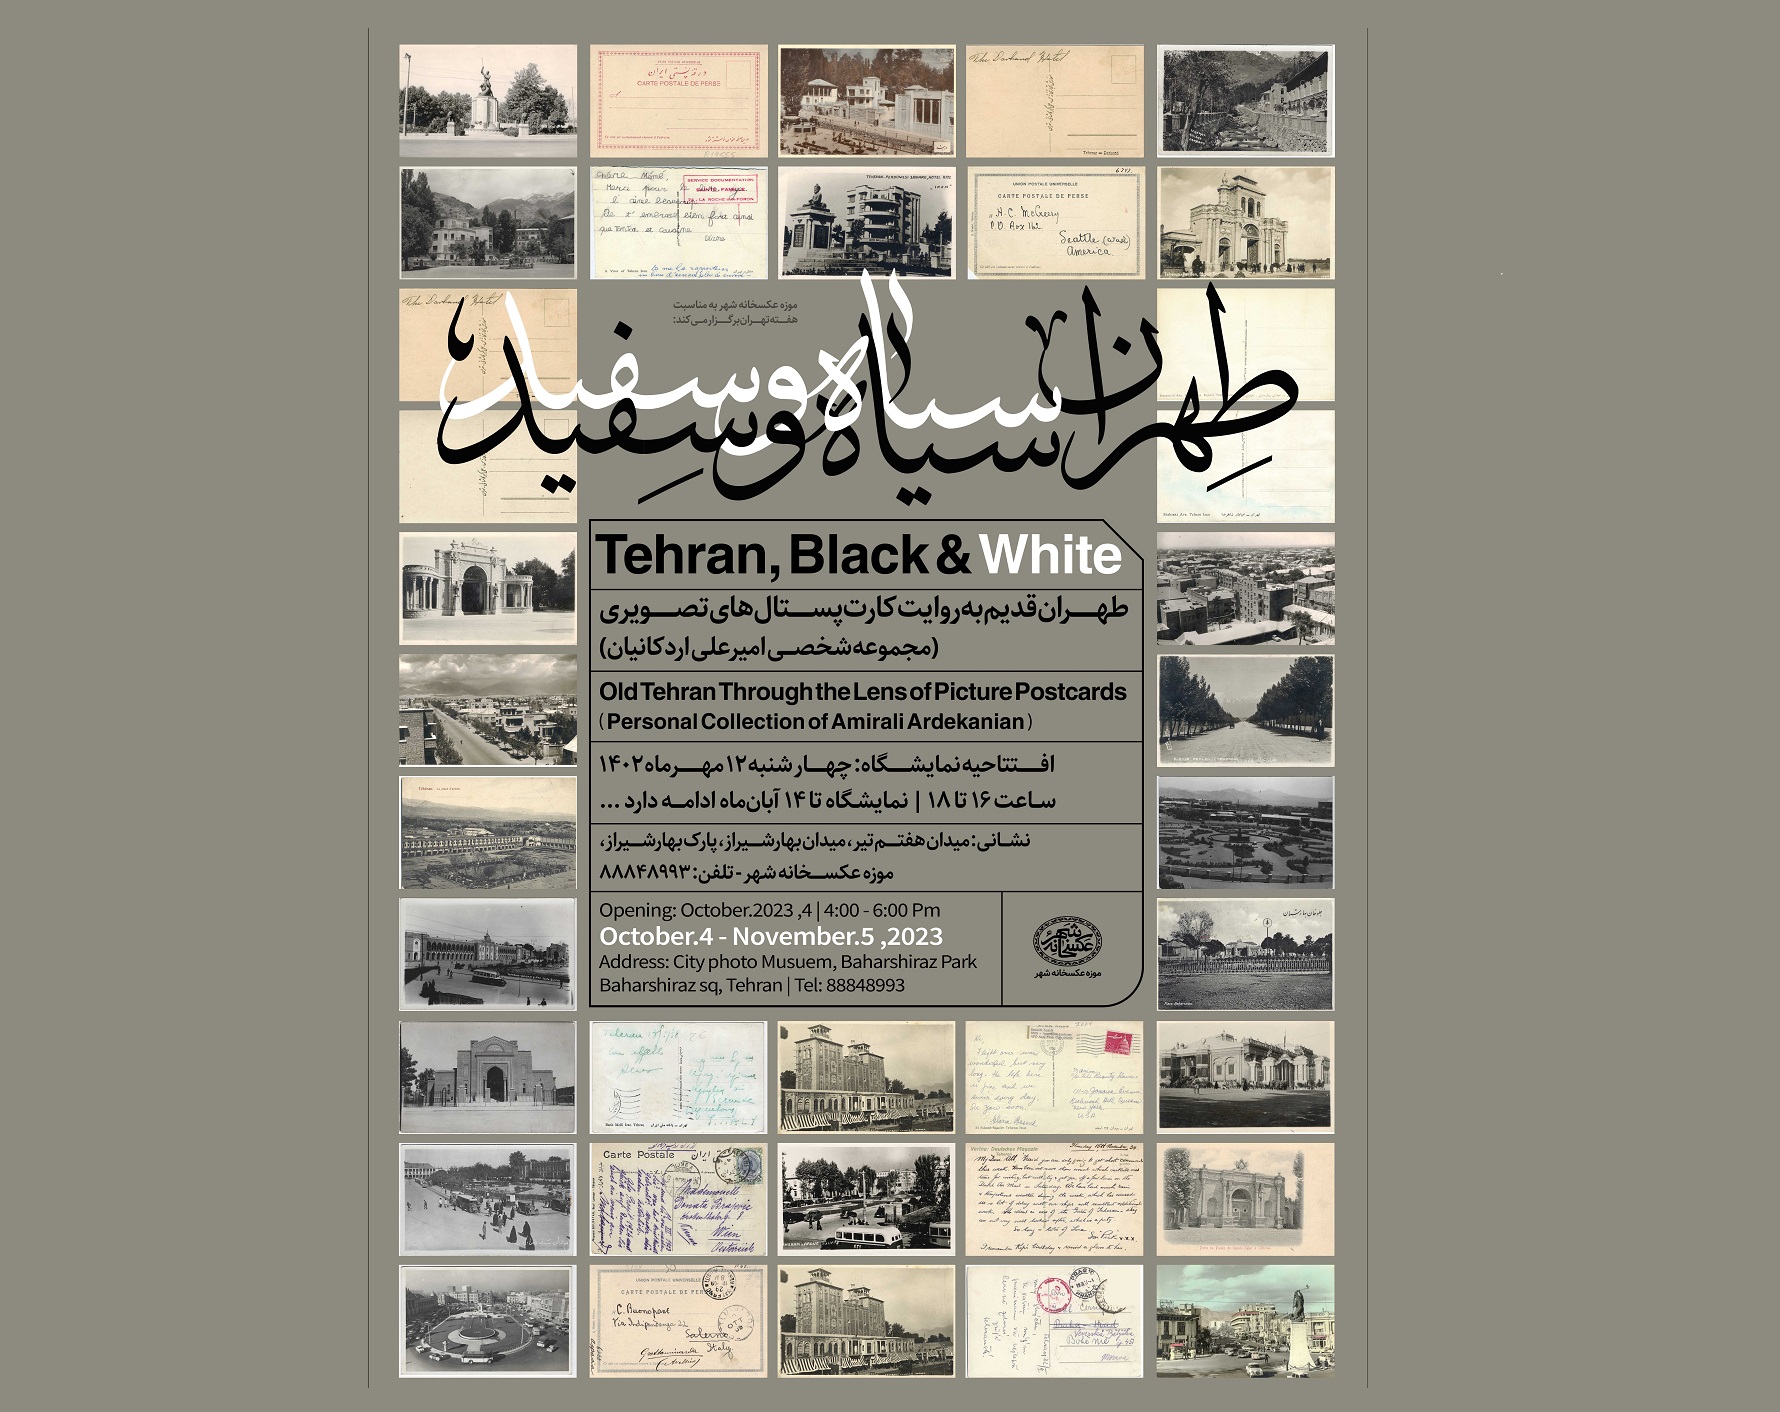 به مناسبت هفته تهران، نمایشگاه «طهران، سیاه و سفید» در موزه عکسخانه شهر